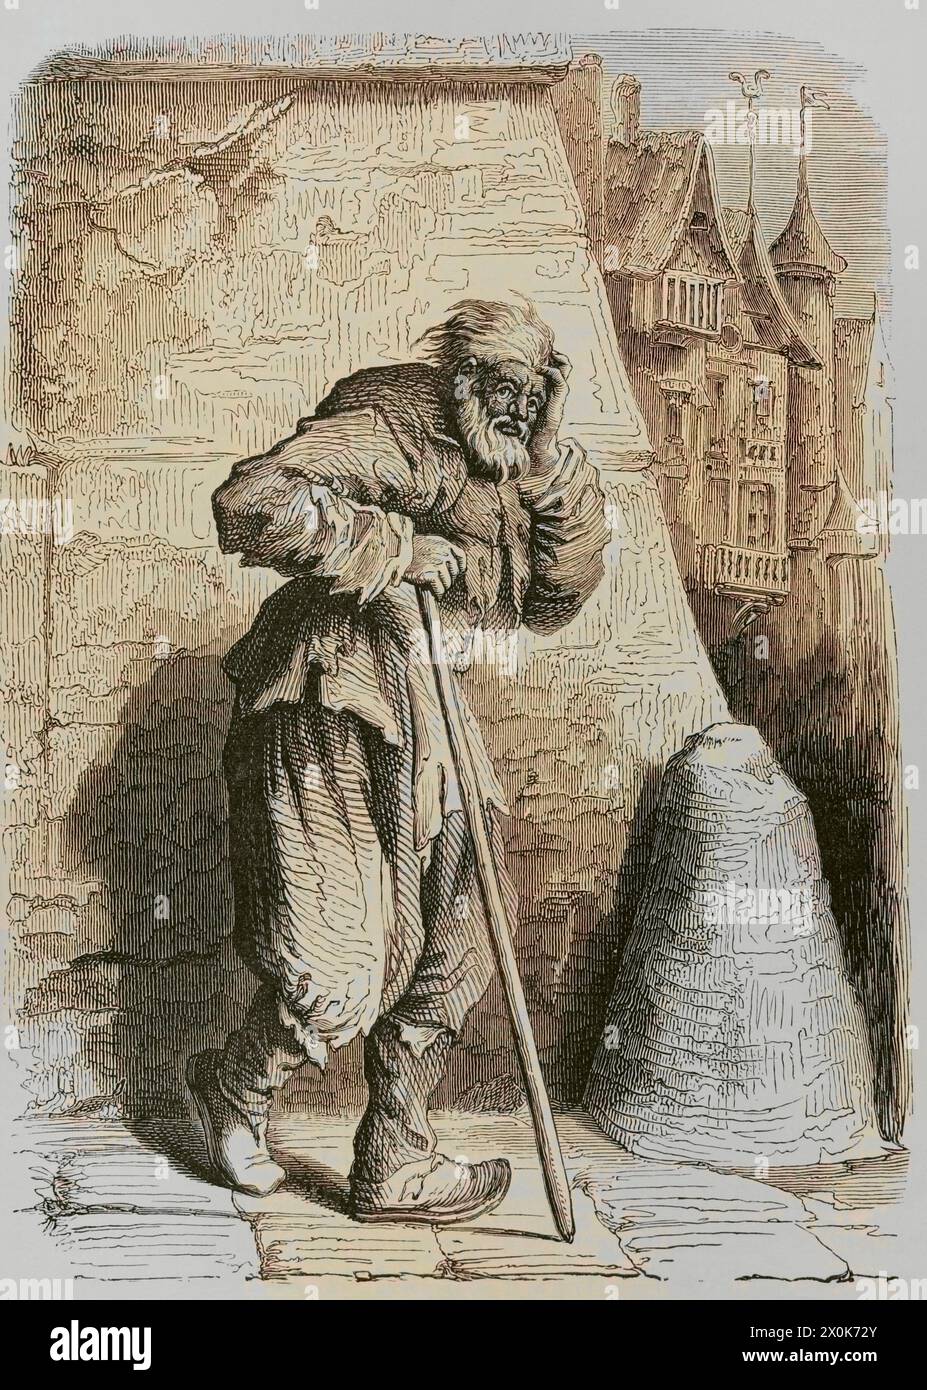 Italian Beggar. Facsimile from an engraving by Jacques Callot (1592-1635). Later colouration. 'Moeurs, usages et costumes au moyen-âge et à l'époque de la Renaissance', by Paul Lacroix. Paris, 1878. Stock Photo